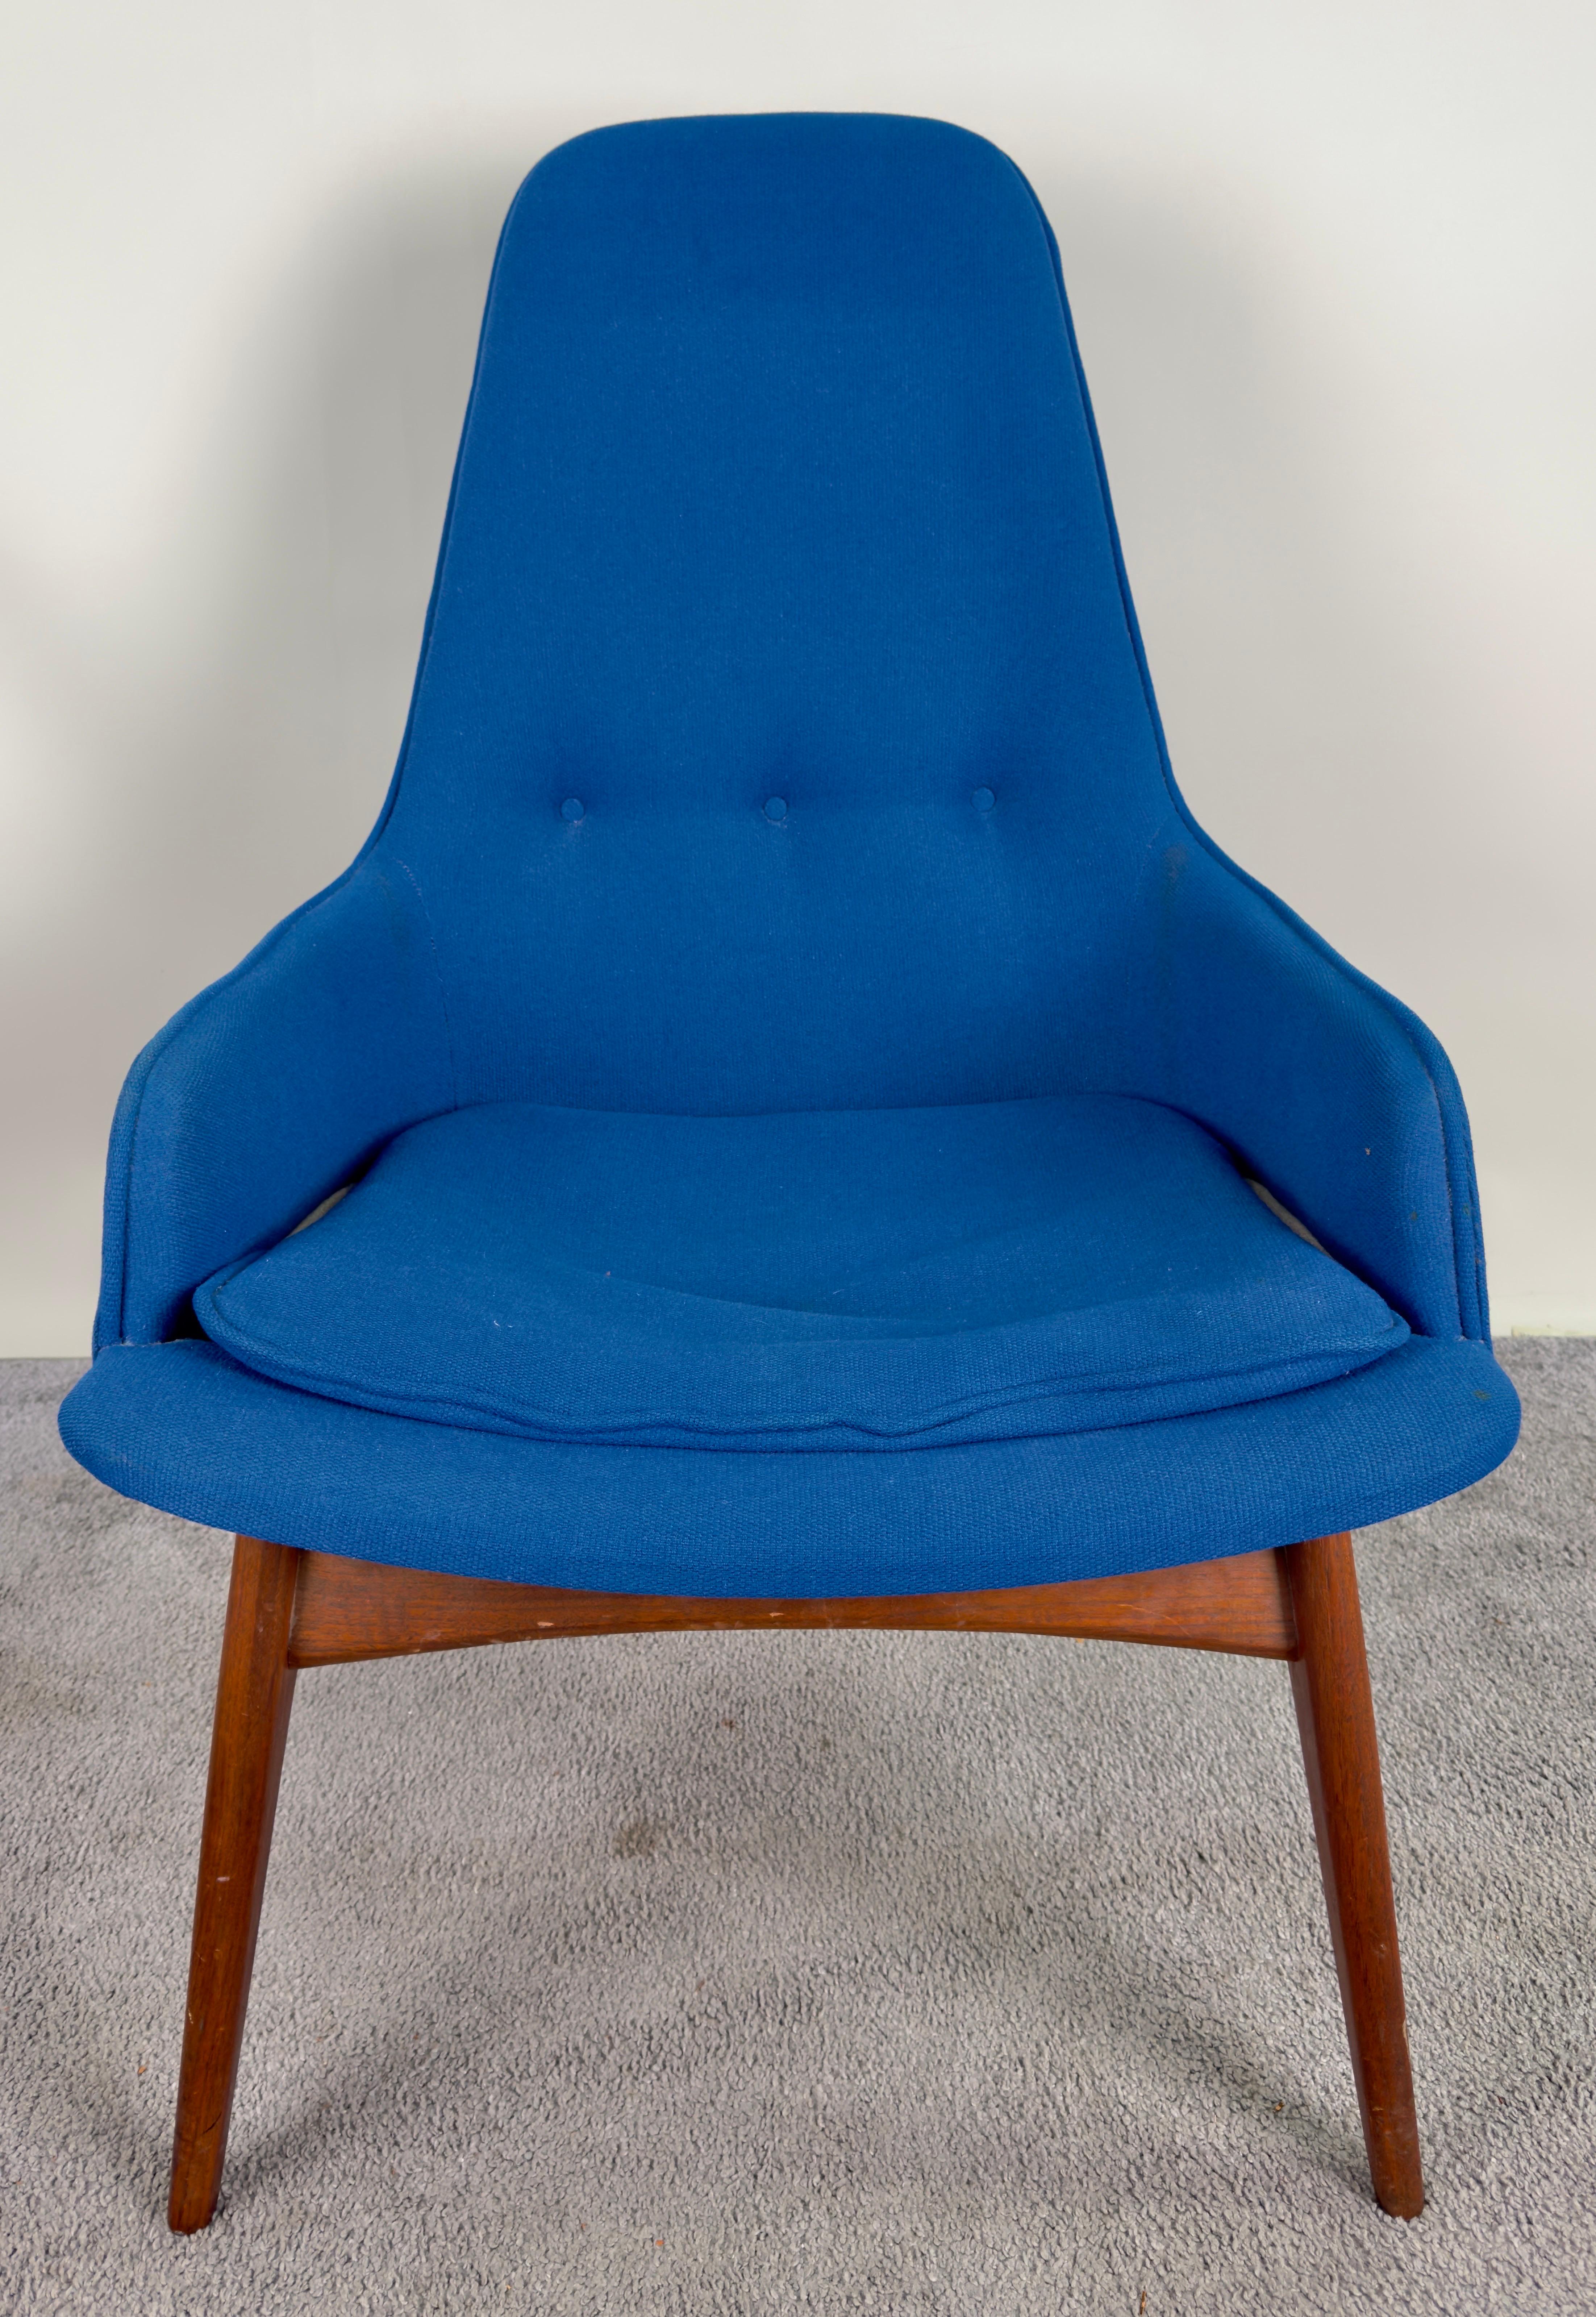 Ein Mid Century Modern Scandinavian Barrel Armchair. Der mit viel Liebe zum Detail gefertigte Stuhl verfügt über ein Gestell aus feinstem Walnussholz, das sowohl Langlebigkeit als auch zeitlose Eleganz garantiert. Die kobaltblaue Polsterung ist